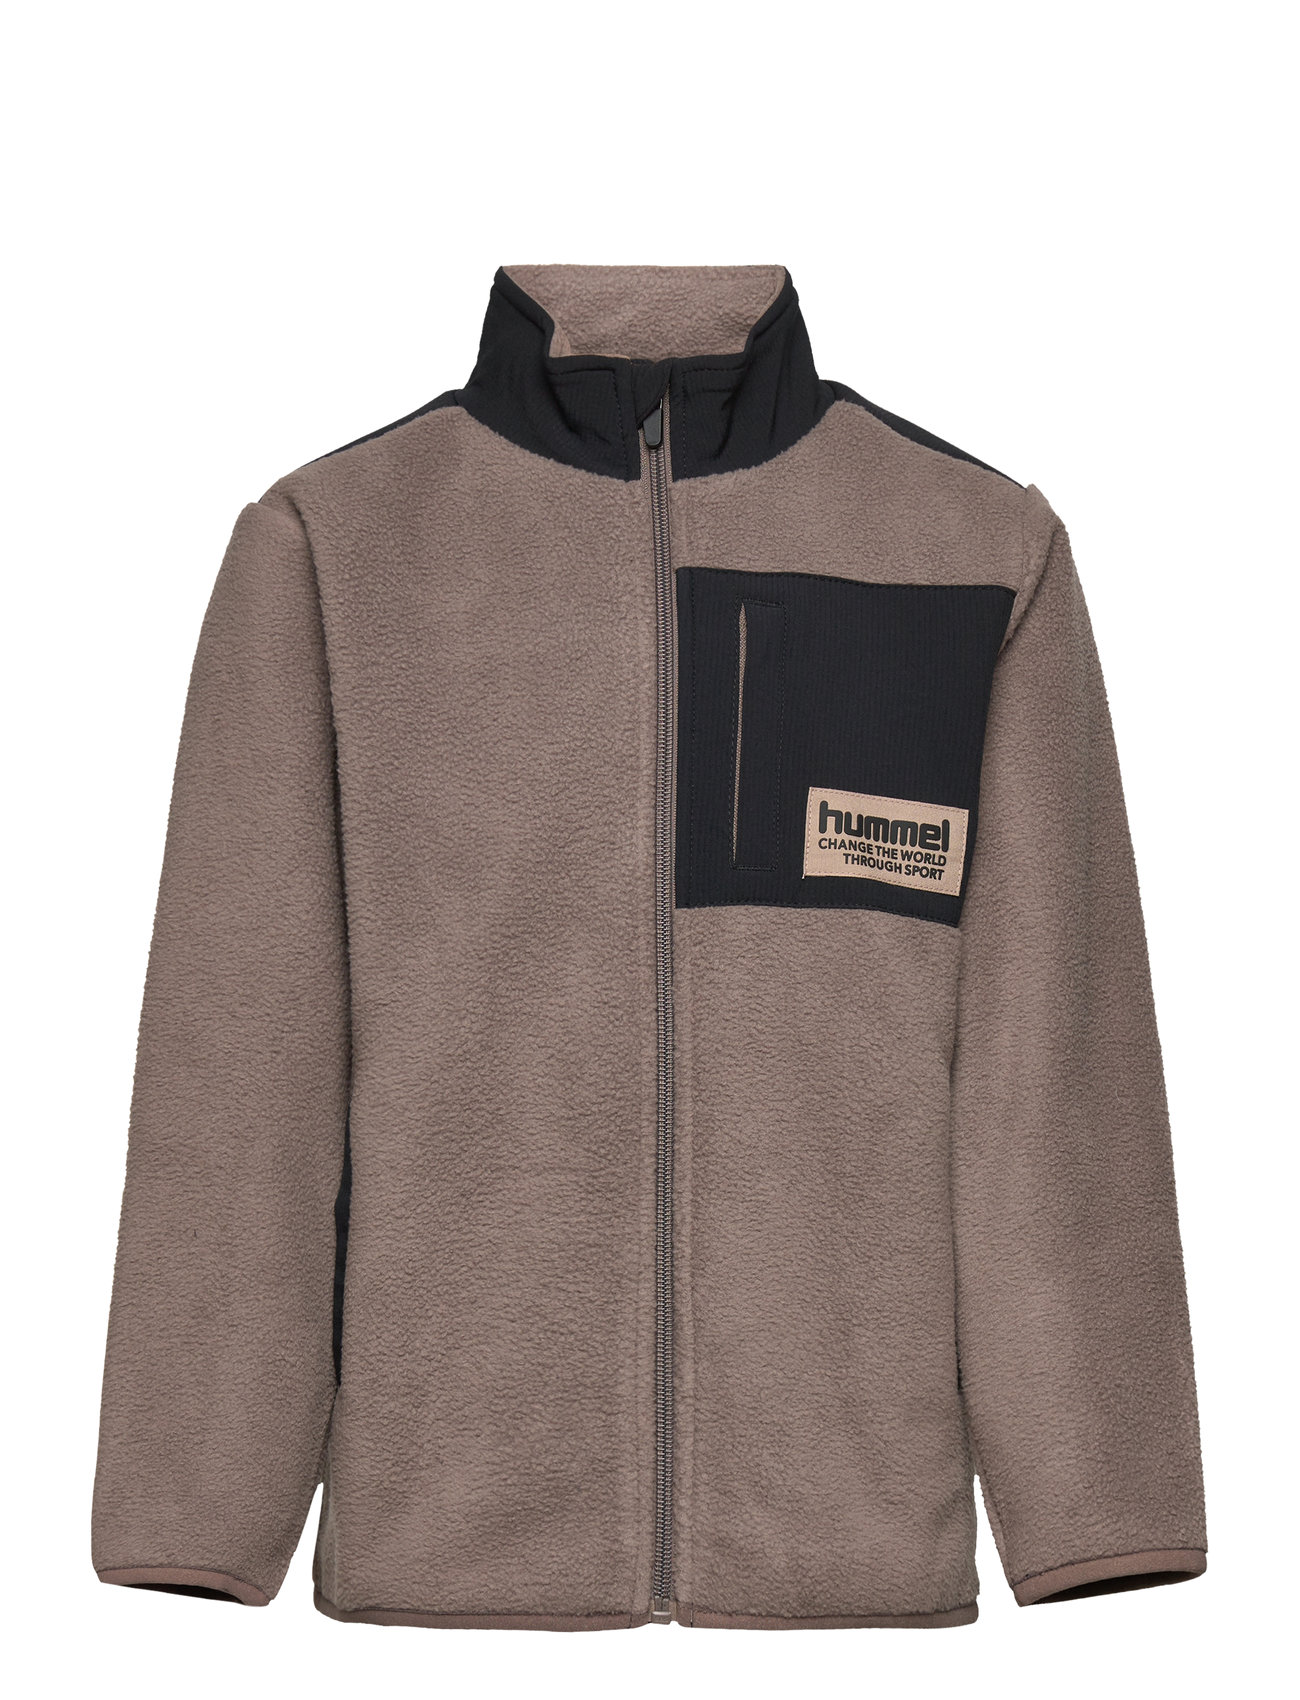 Hummel Hmldare Fleece Jacket Boozt.com Switzerland - Fleece-Kleidung 